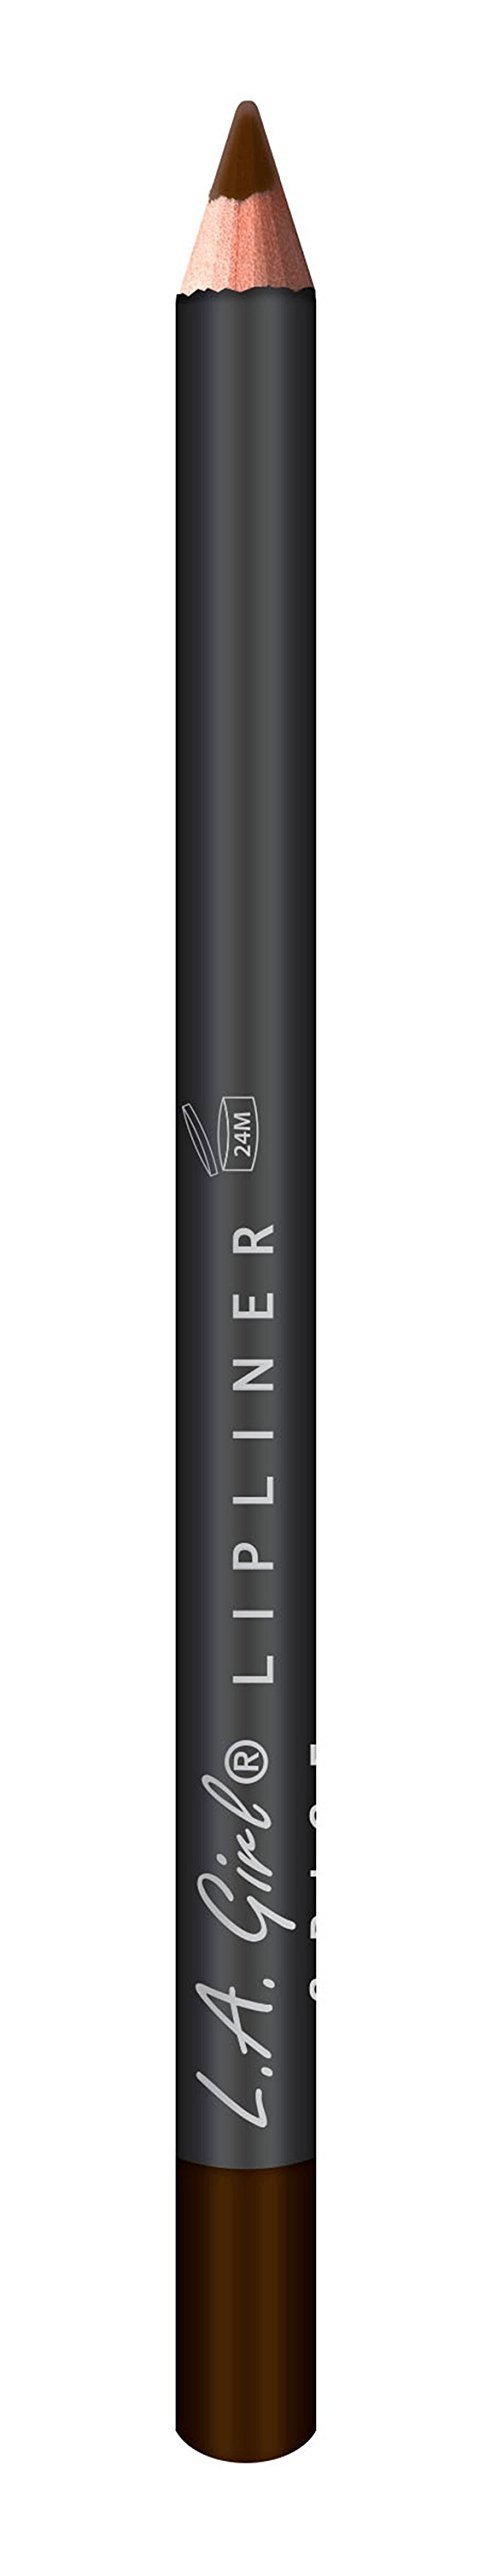 [Australia] - L.A. Girl Lipliner Pencil 553 Espresso, Assortment, 1 Count (LAX-GP553) 